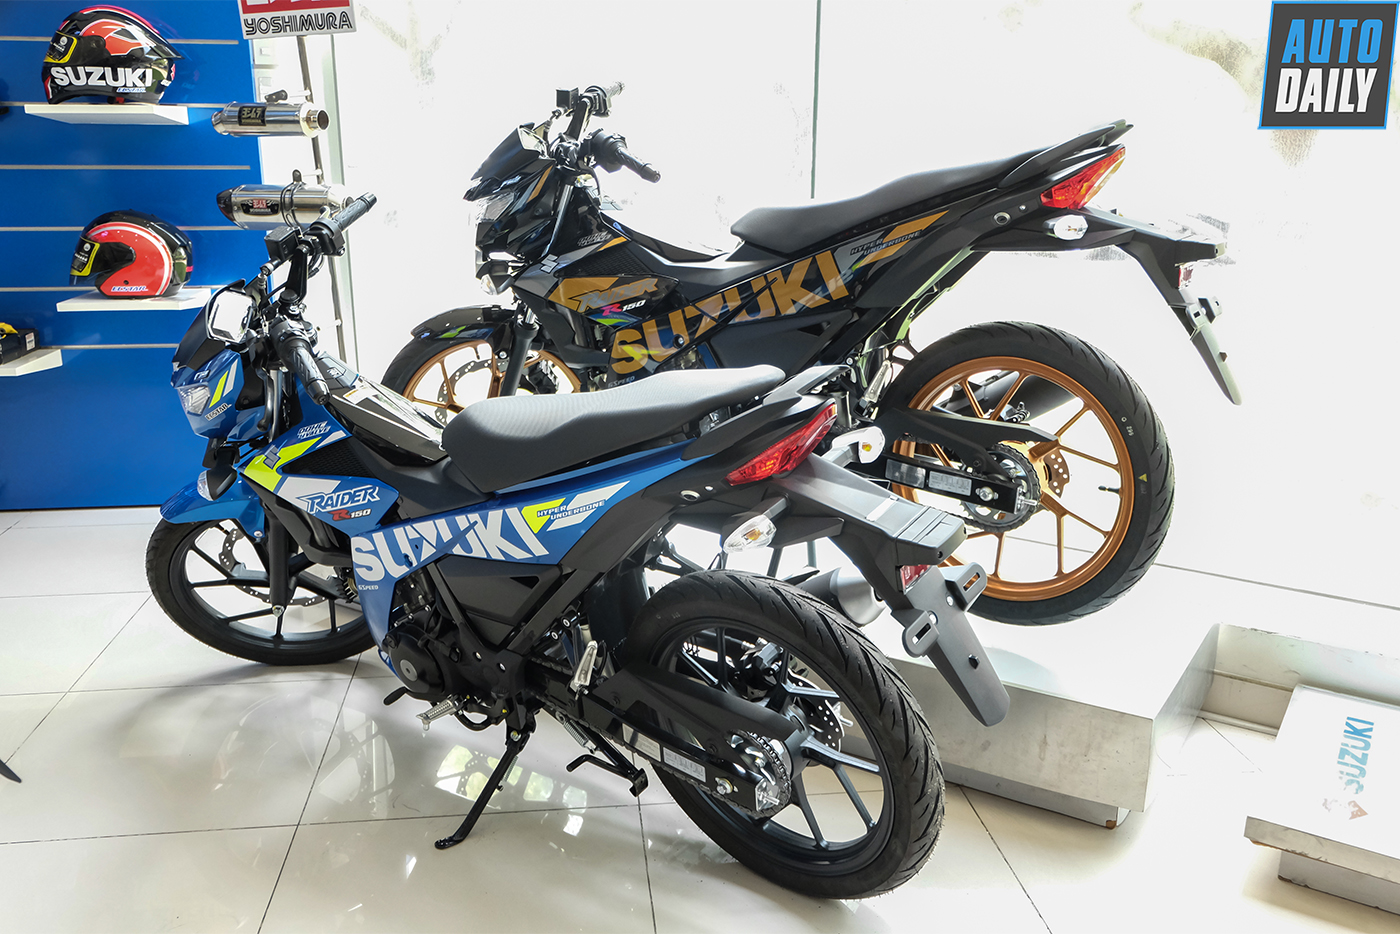 Suzuki VN trình làng Raider R150 2020 thể thao hơn, giá bán không đổi